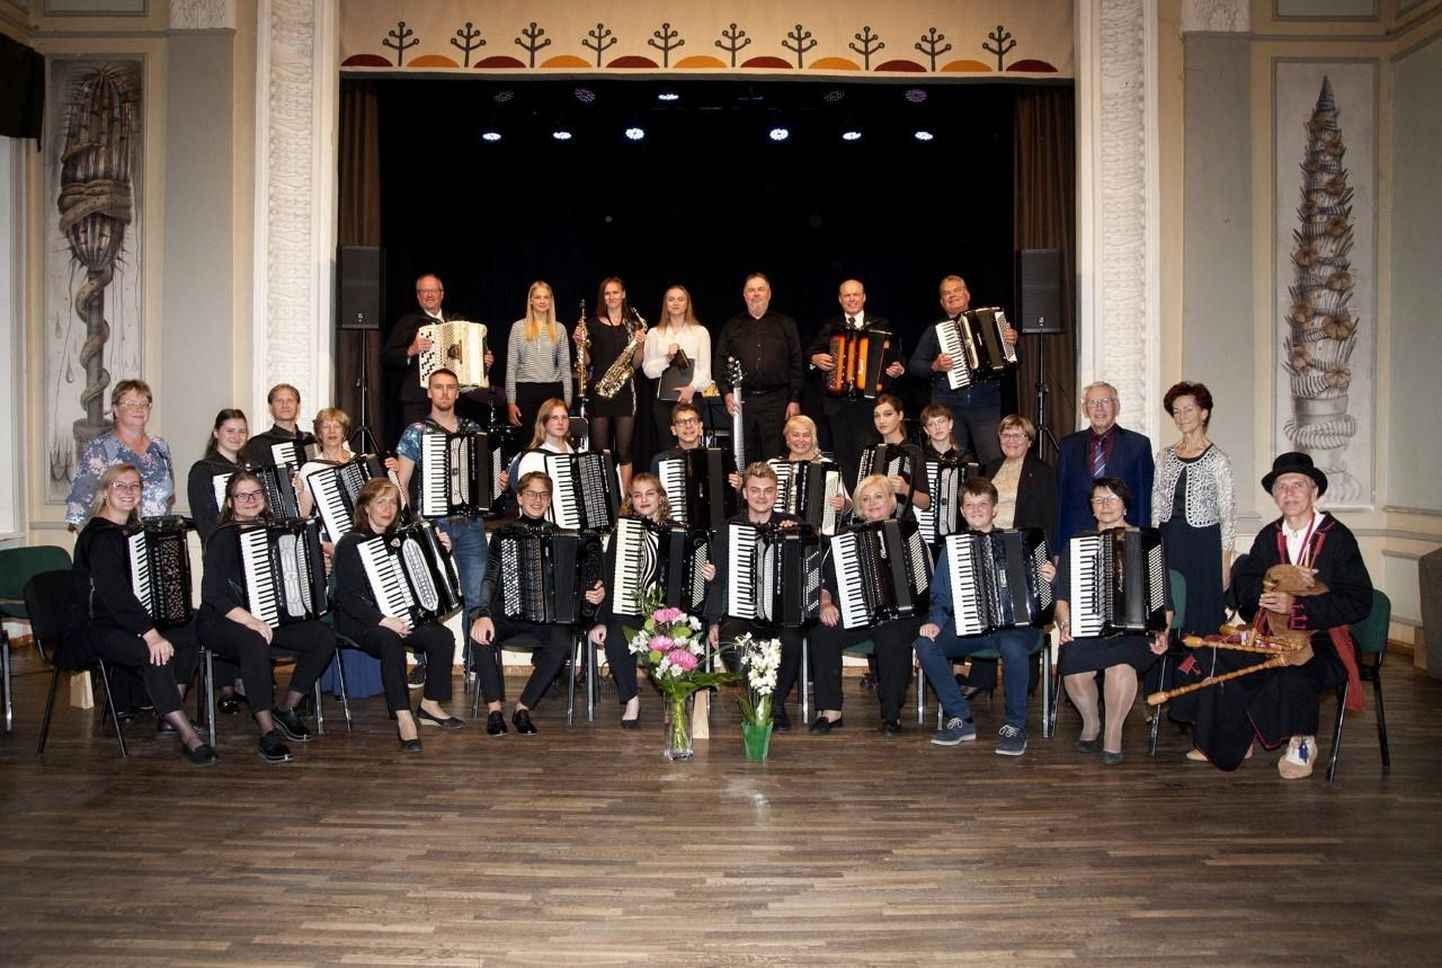 Ansambel Baltic Tremolo tähistas Abja-Paluojal 20. tegevusaastapäeva. Lisaks Mulgimaa pealinnale on orkestri tugikeskused Leedus Šiauliais ja Lätis Limbažis.